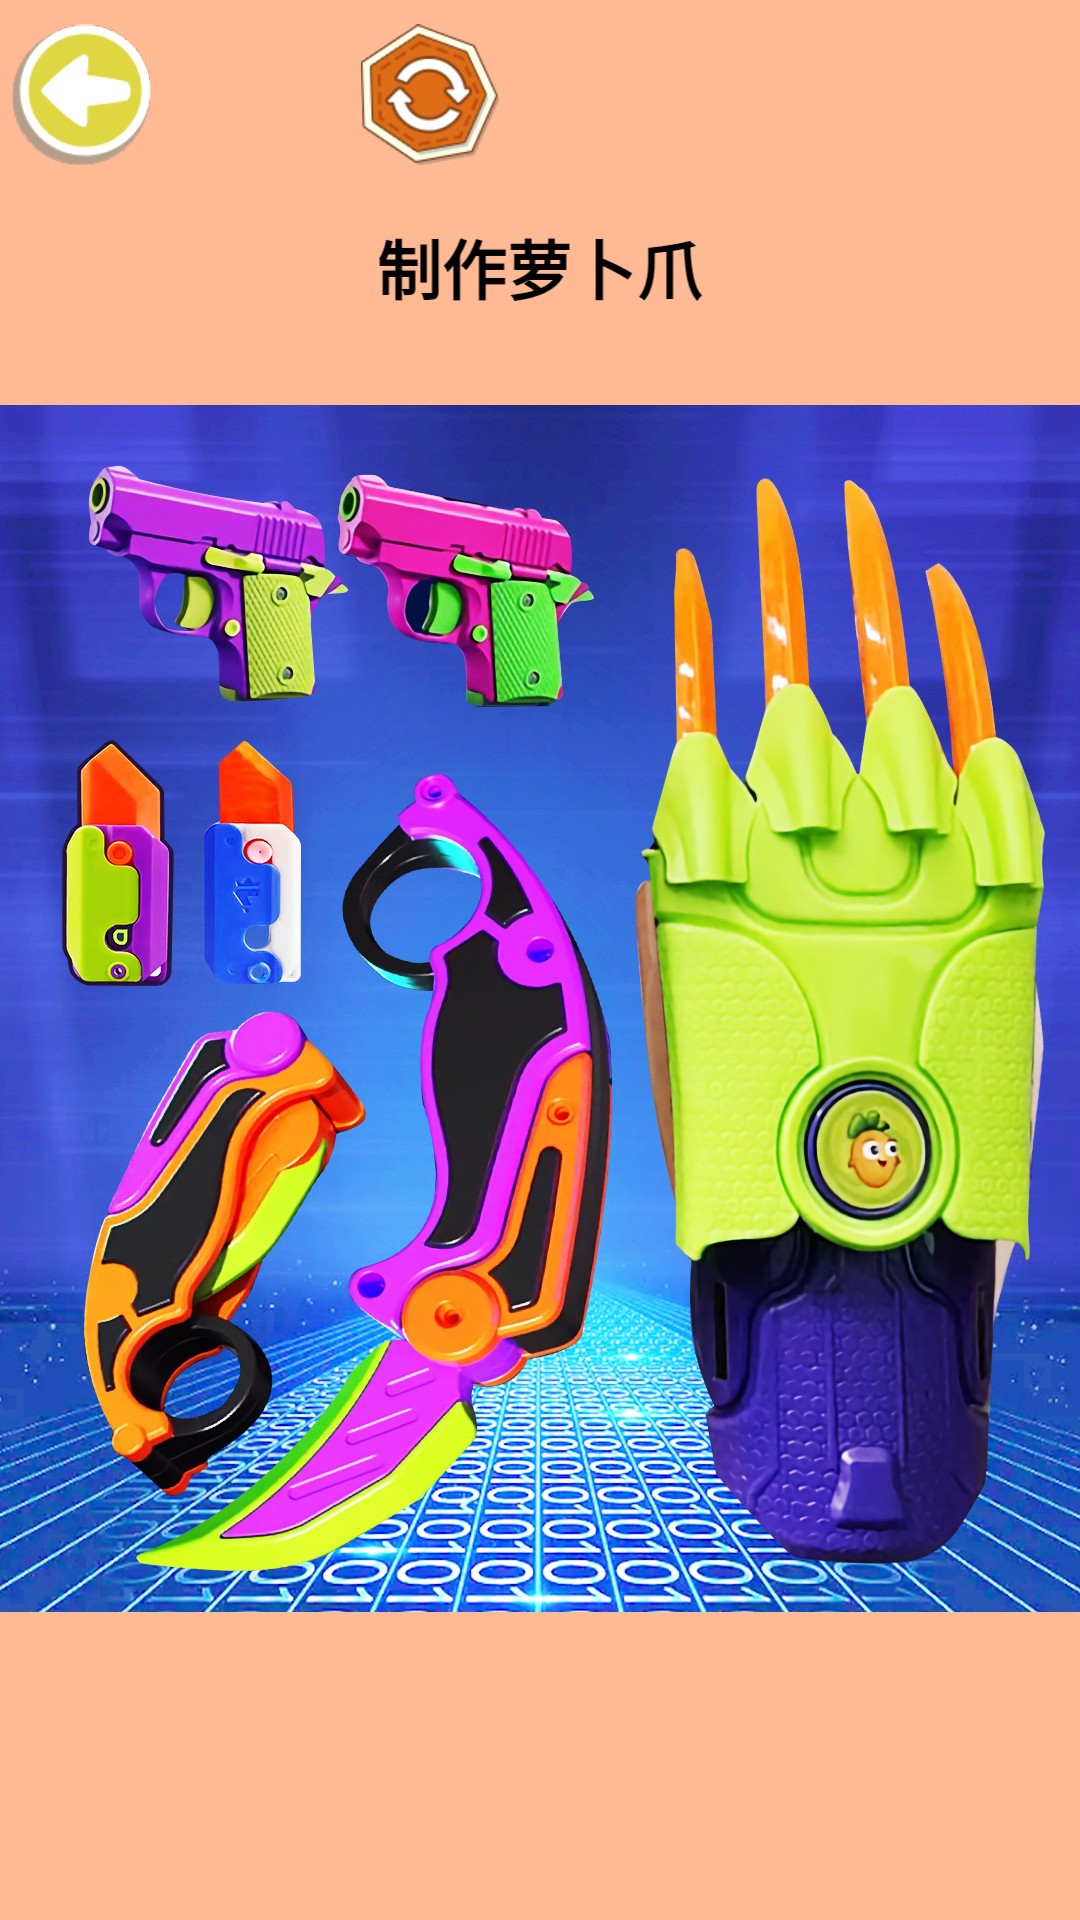 金刚萝卜爪-组装你的萝卜武器v1.0-多种酷炫萝卜武器等你体验截图2